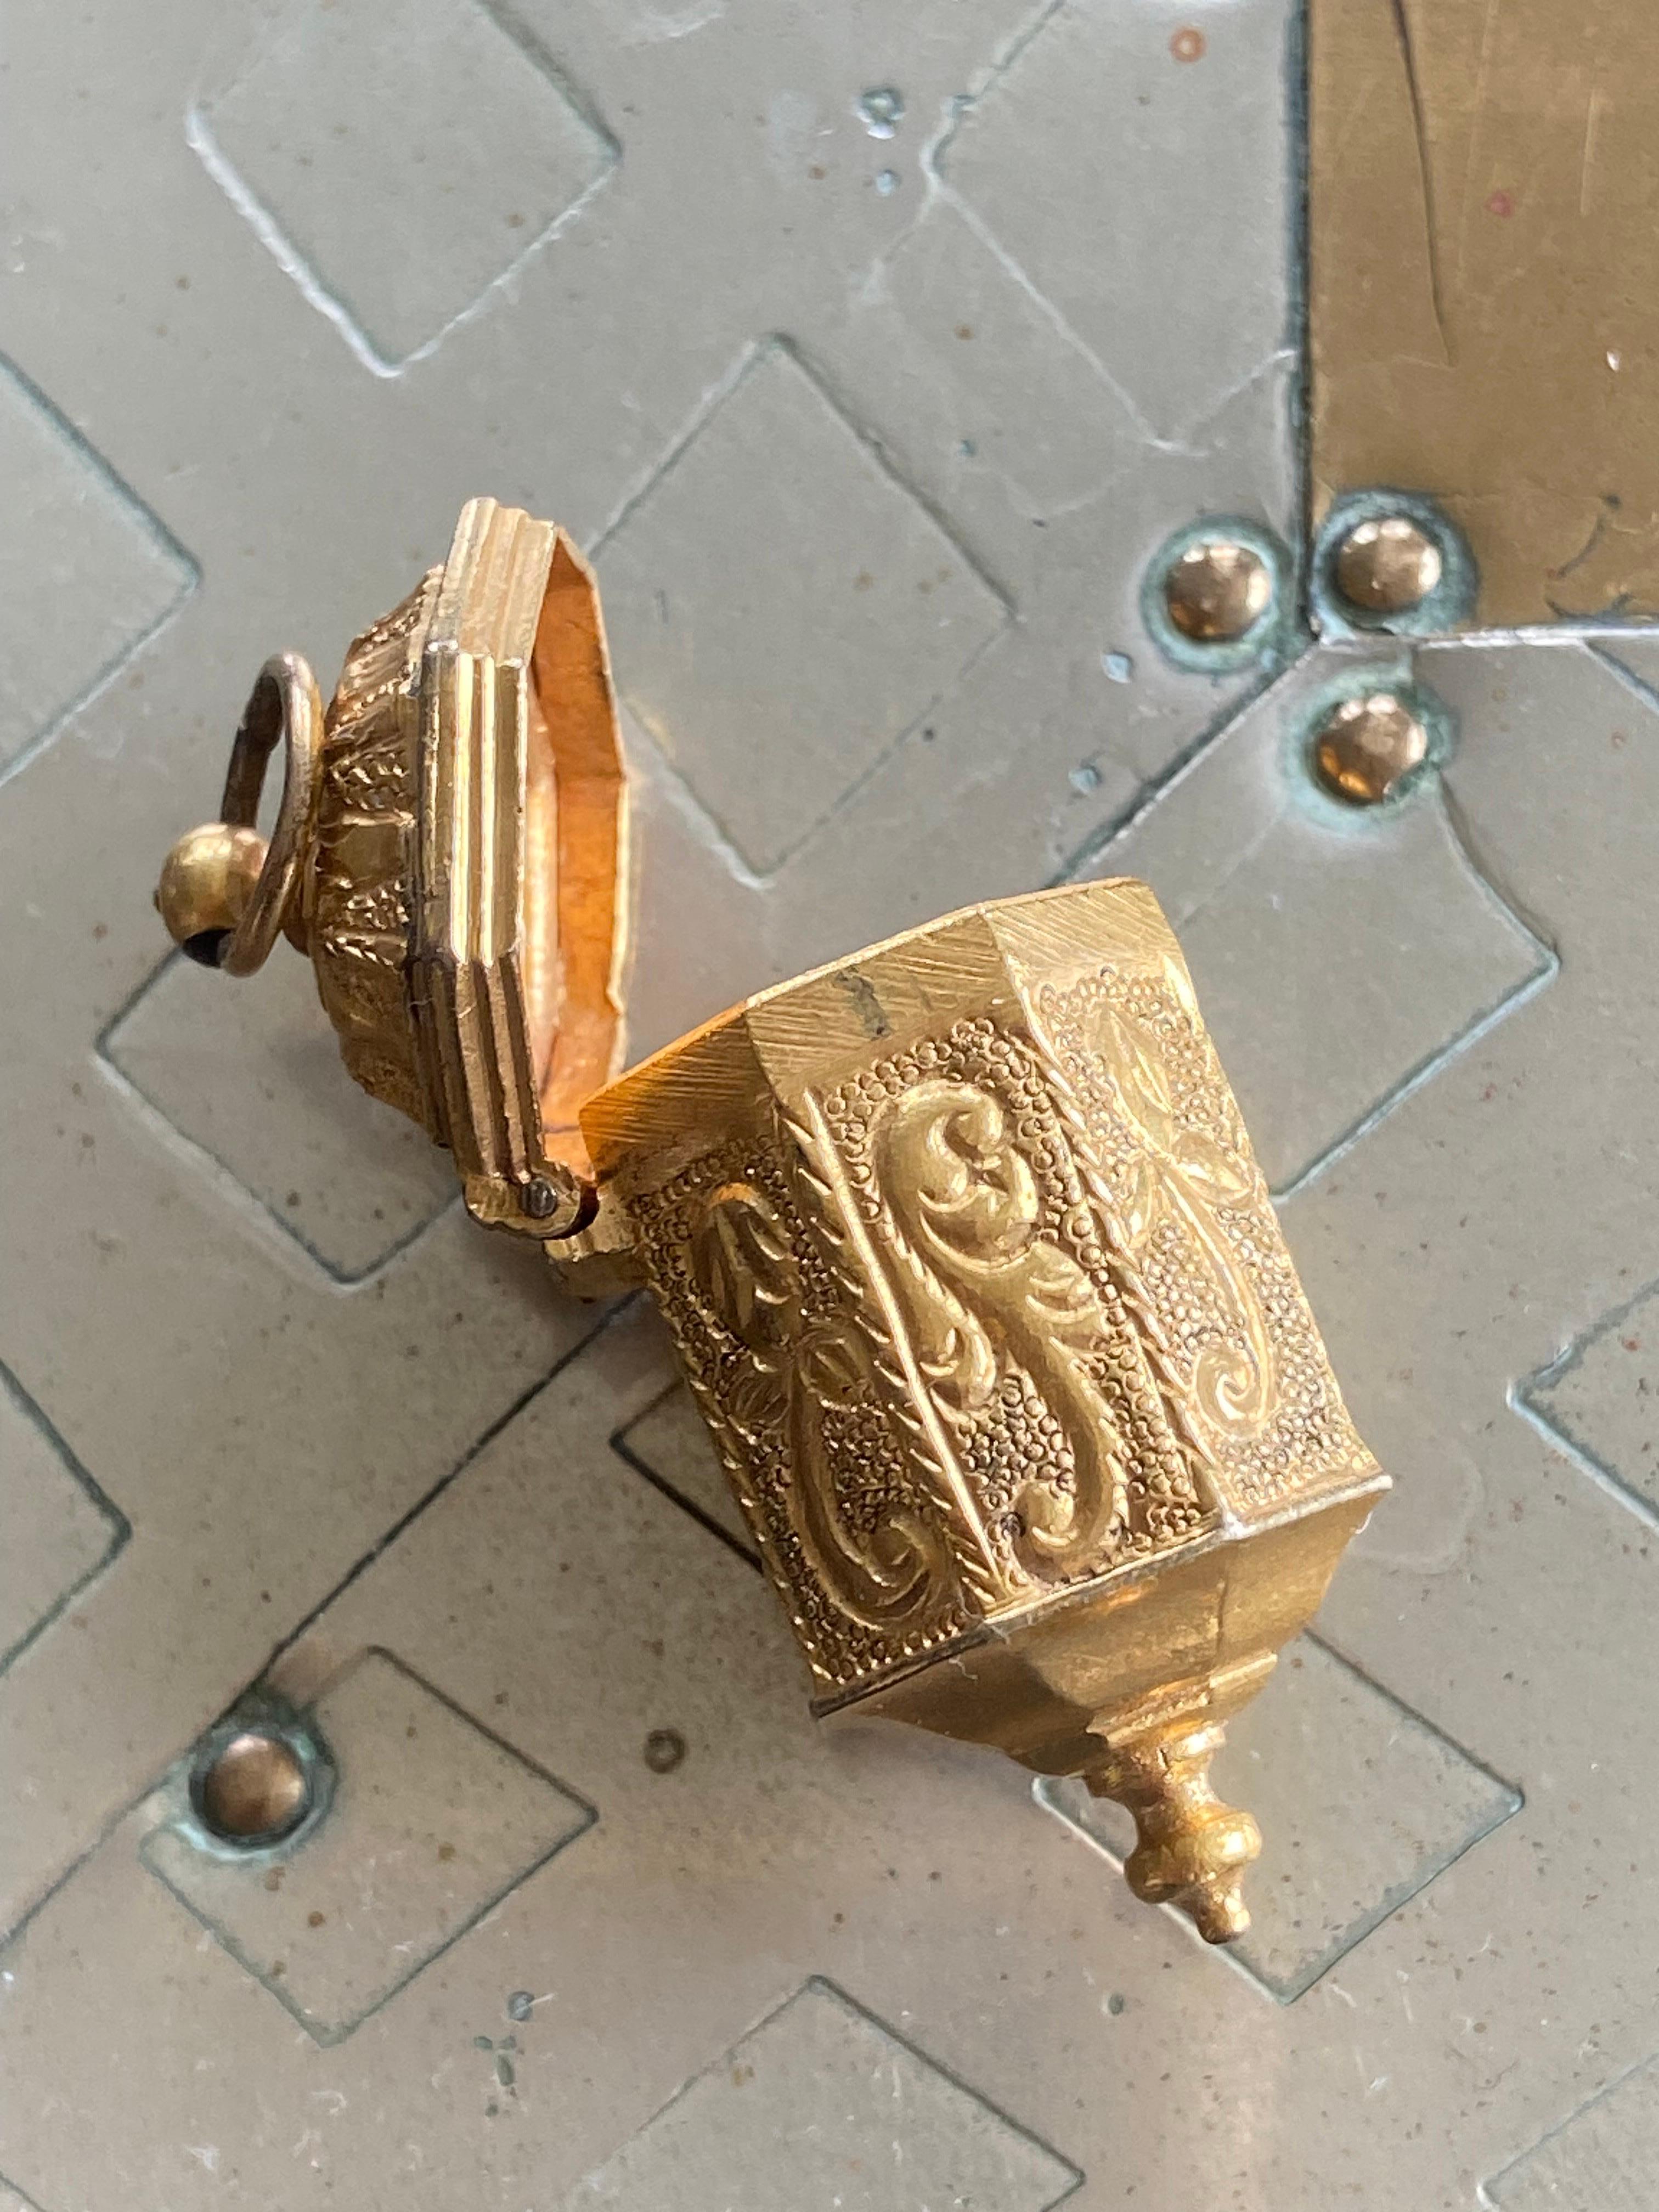 Kleines goldenes Kästchen aus dem 18. Jahrhundert in achteckiger Form, das mit feinen Details graviert ist und auf allen Seiten verschiedene Bilder zeigt! Ein wunderschönes Medaillon, in dem du deinen kleinen Schatz aufbewahren kannst! Ein sehr